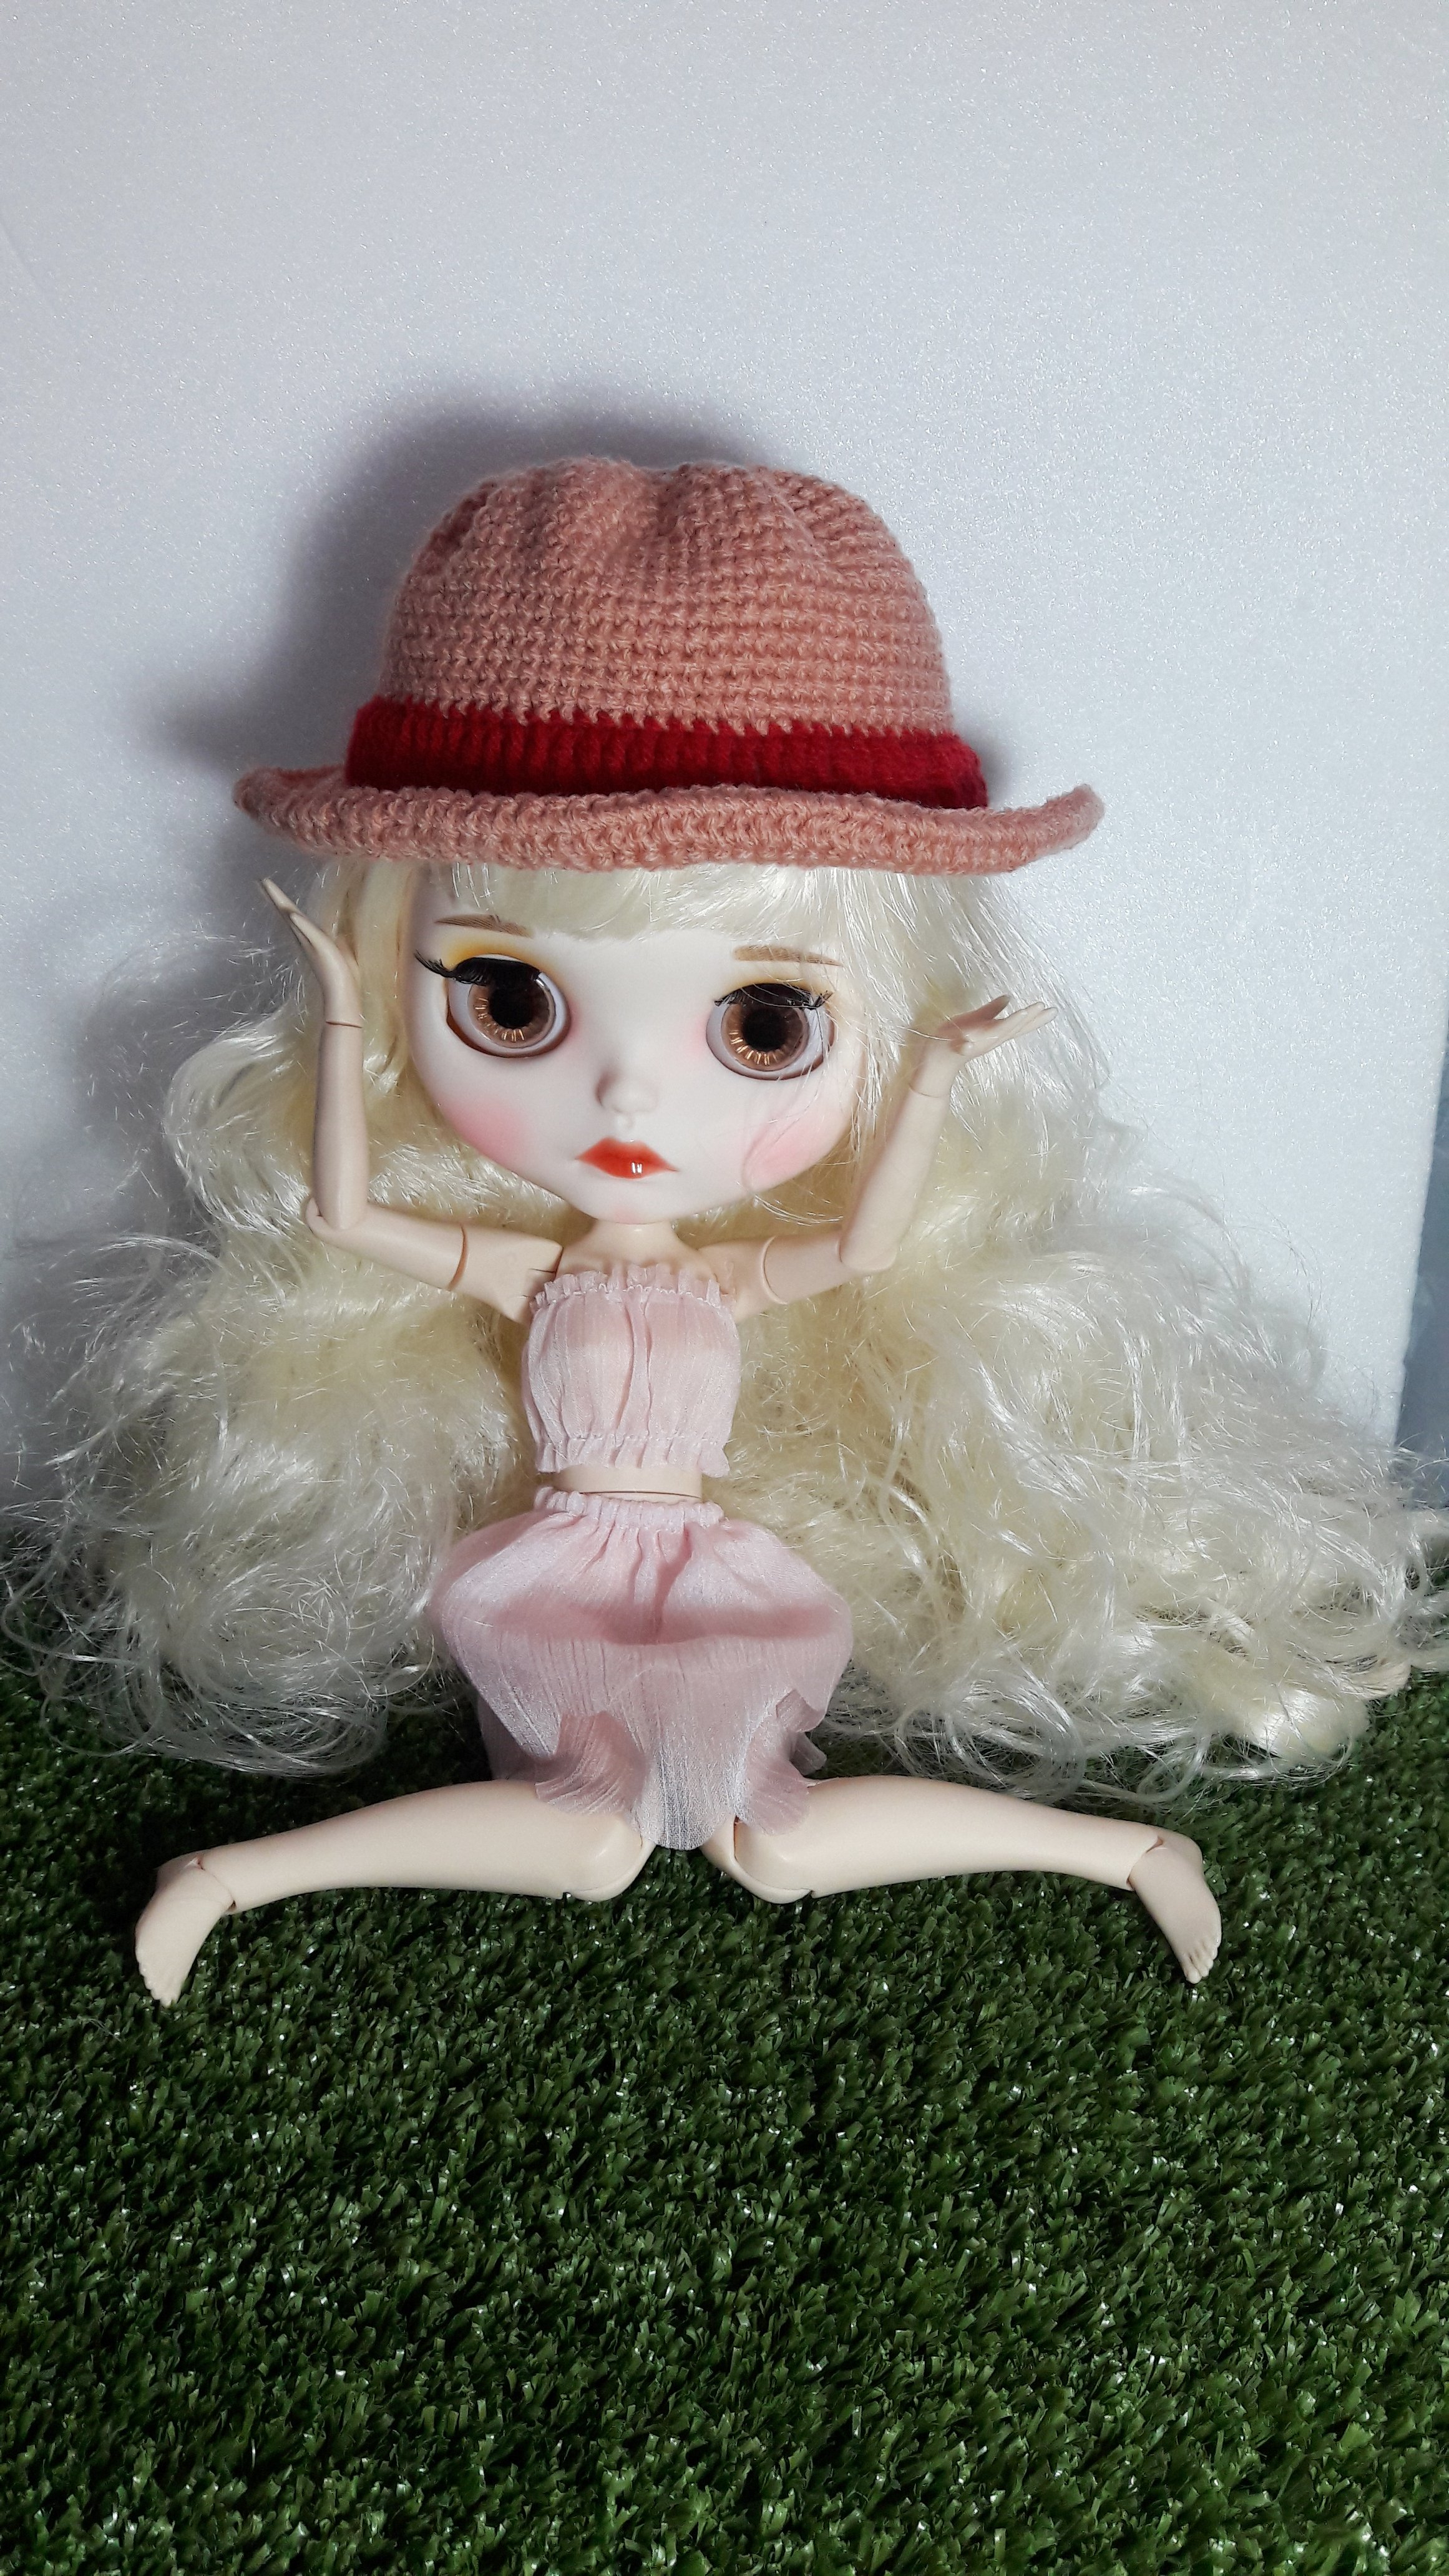 (1ชิ้น พร้อมส่ง เซ็ท9/14) หมวกตุ๊กตา หมวกถักไหมพรม ชุดตุ๊กตา ชุดถักไหมพรมตุ๊กตาบลายธ์ blythe จำนวน 1 ชิ้น doll clothes doll hat ชุดบลายธ์